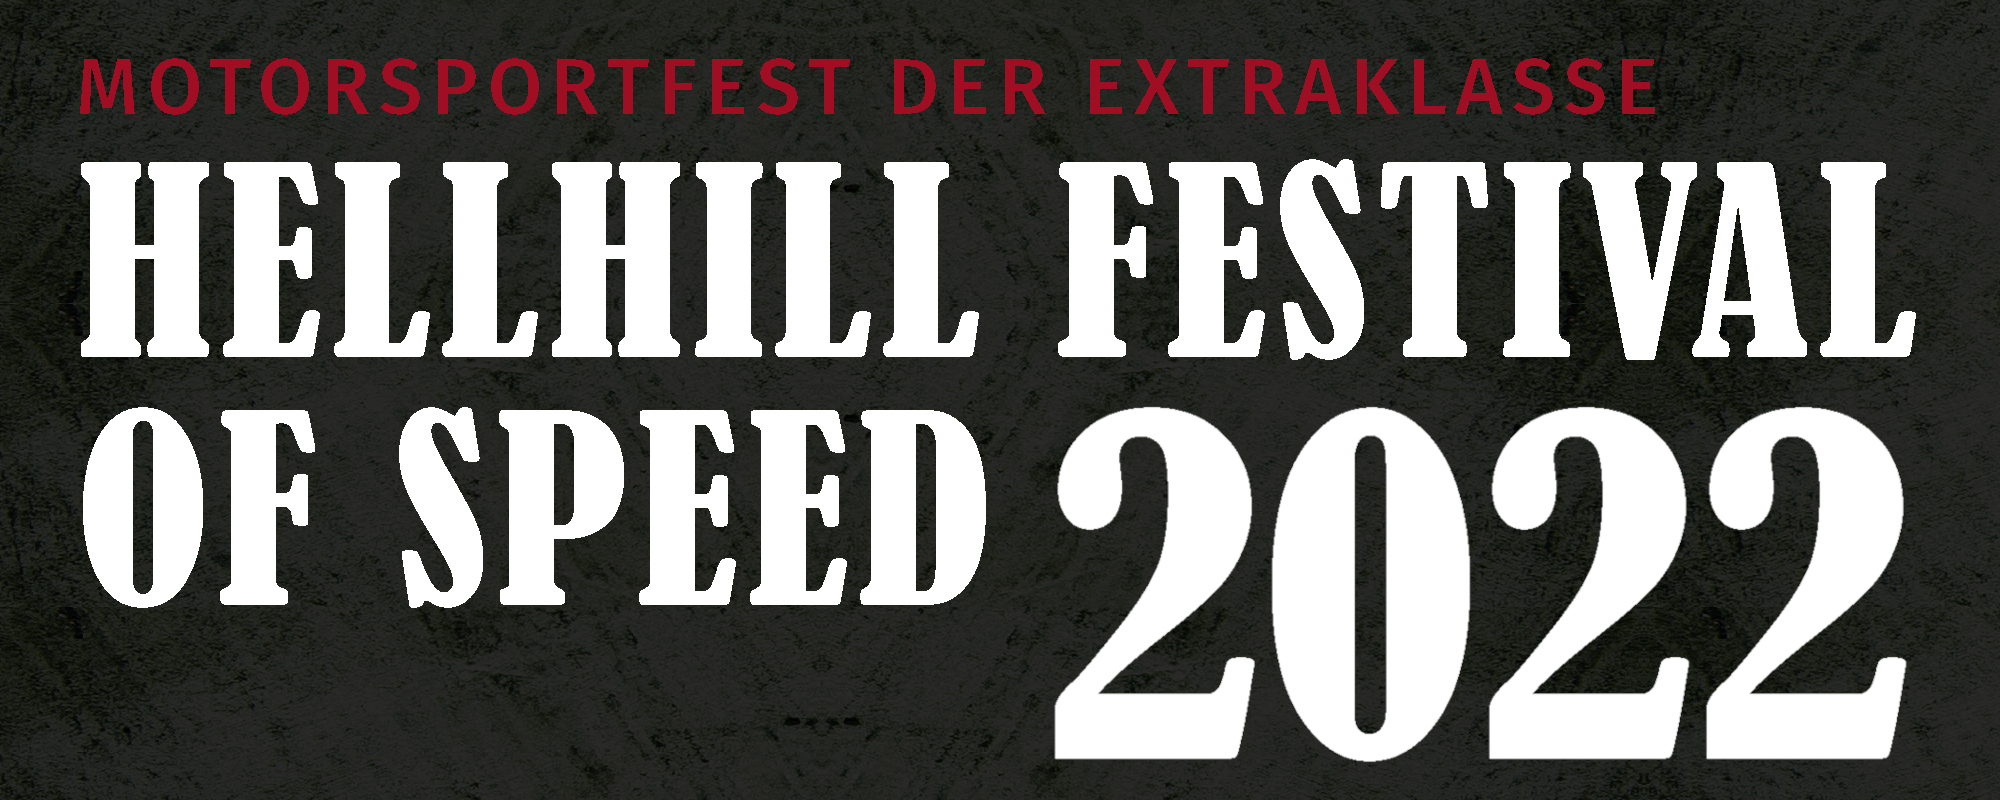 Hellhill Festival of Speed